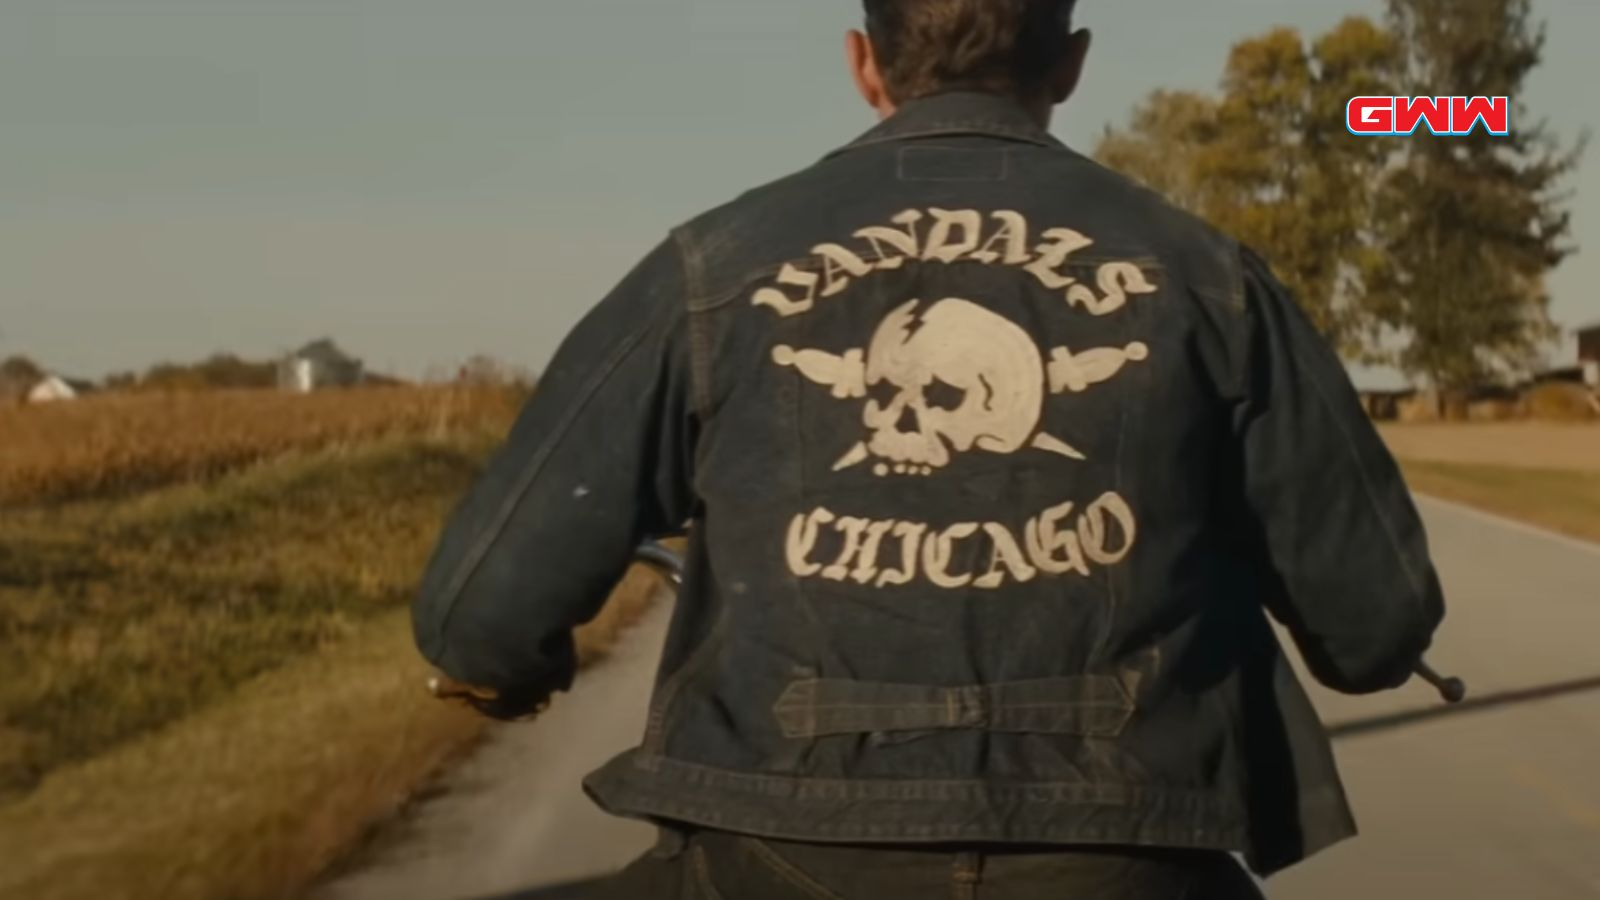 Vista posterior de un motociclista con una chaqueta de "Vandals Chicago".